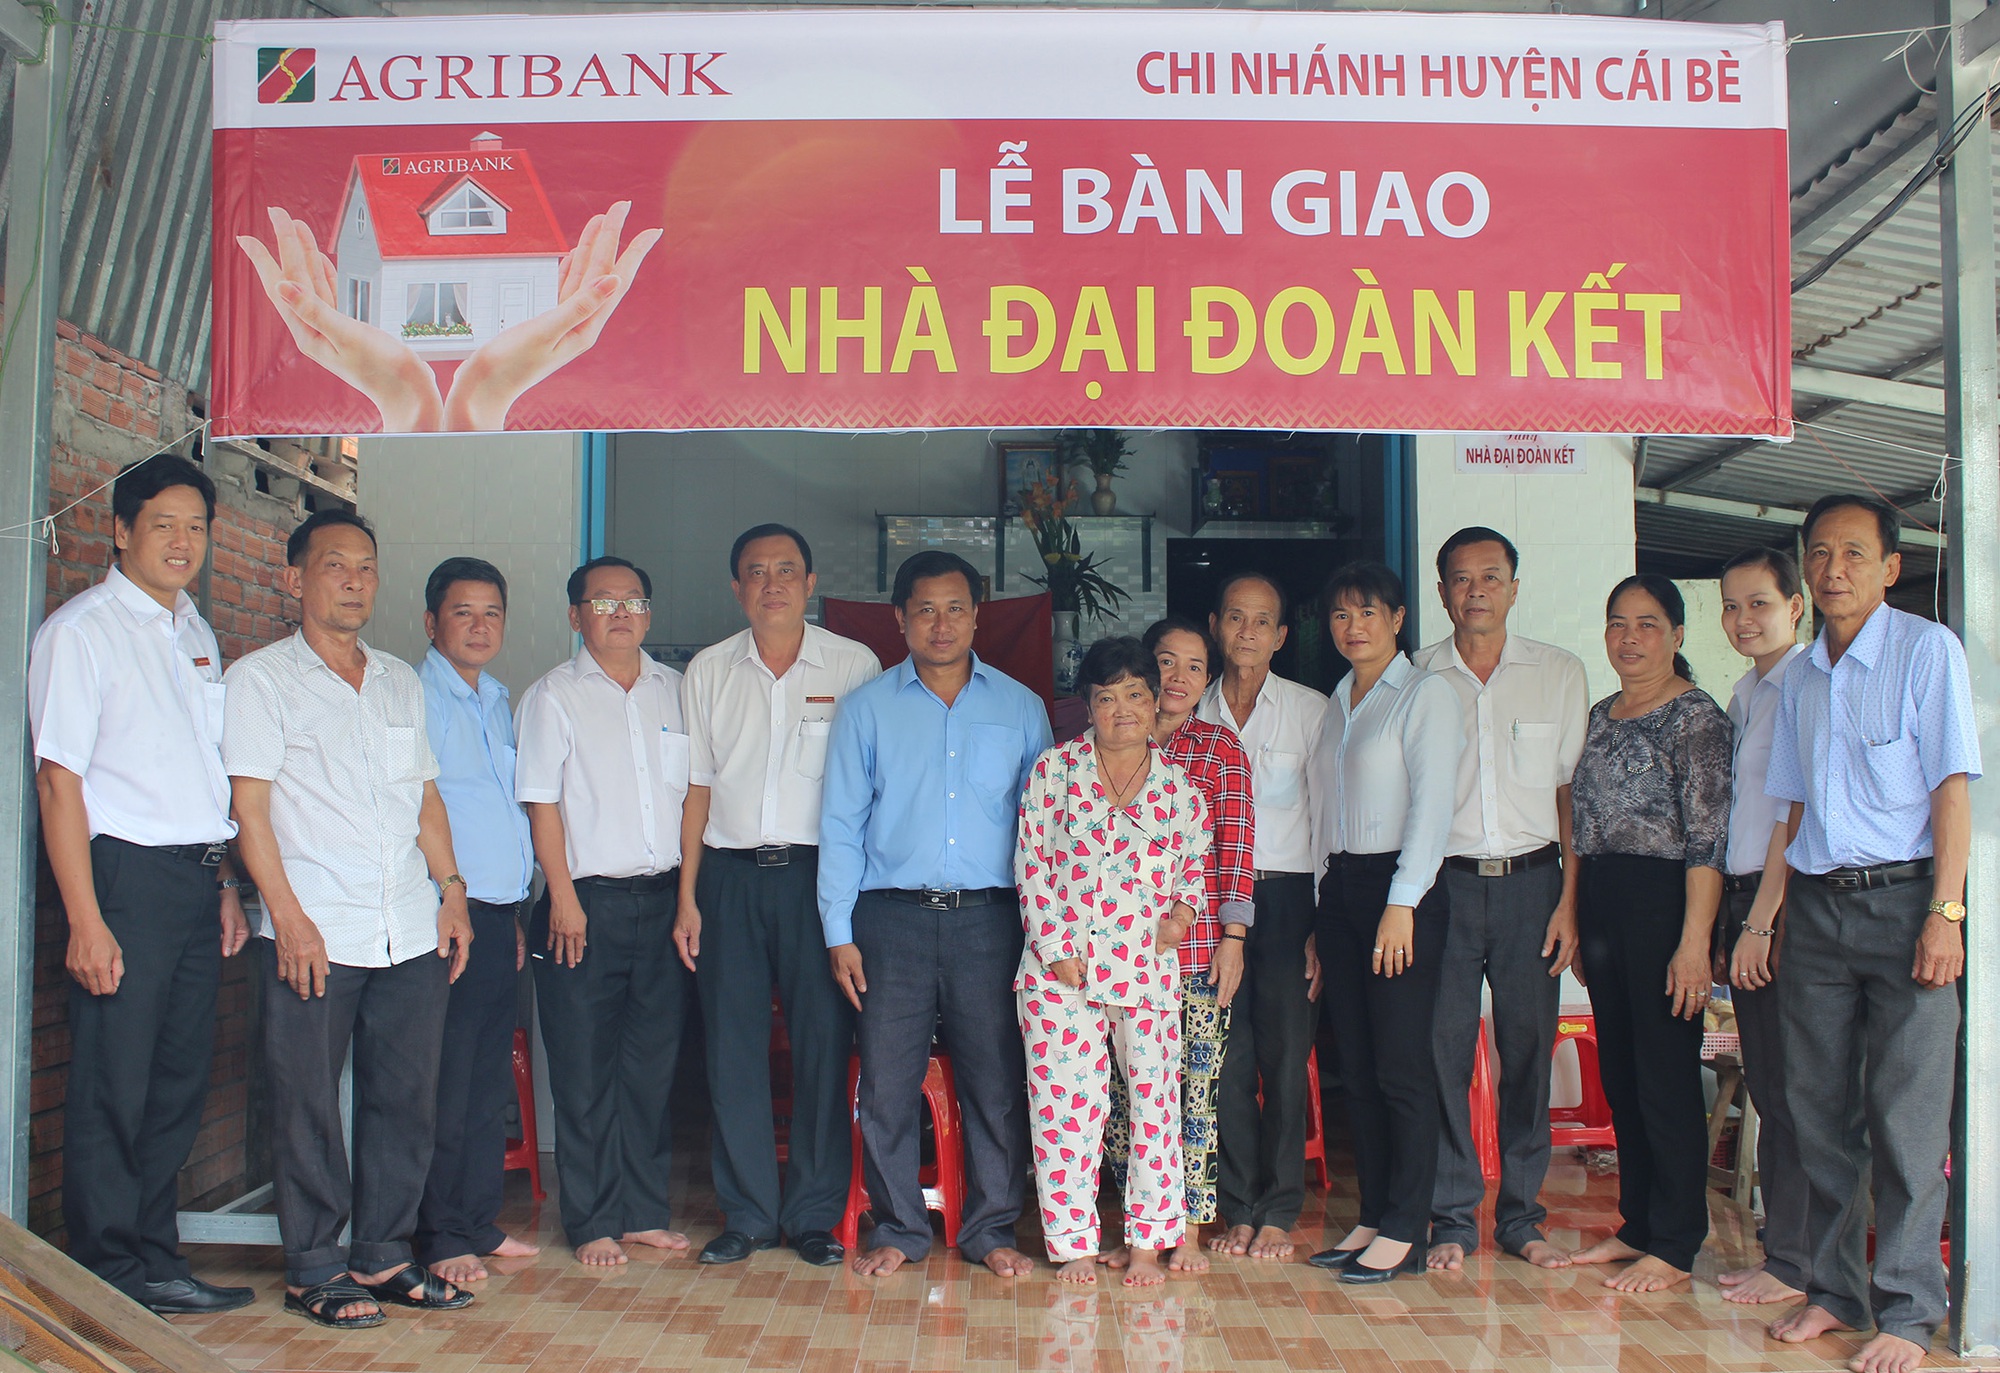 Agribank Cái Bè trao tặng 5 căn nhà đại đoàn kết cho các hội gia đình khó khăn - Ảnh 2.